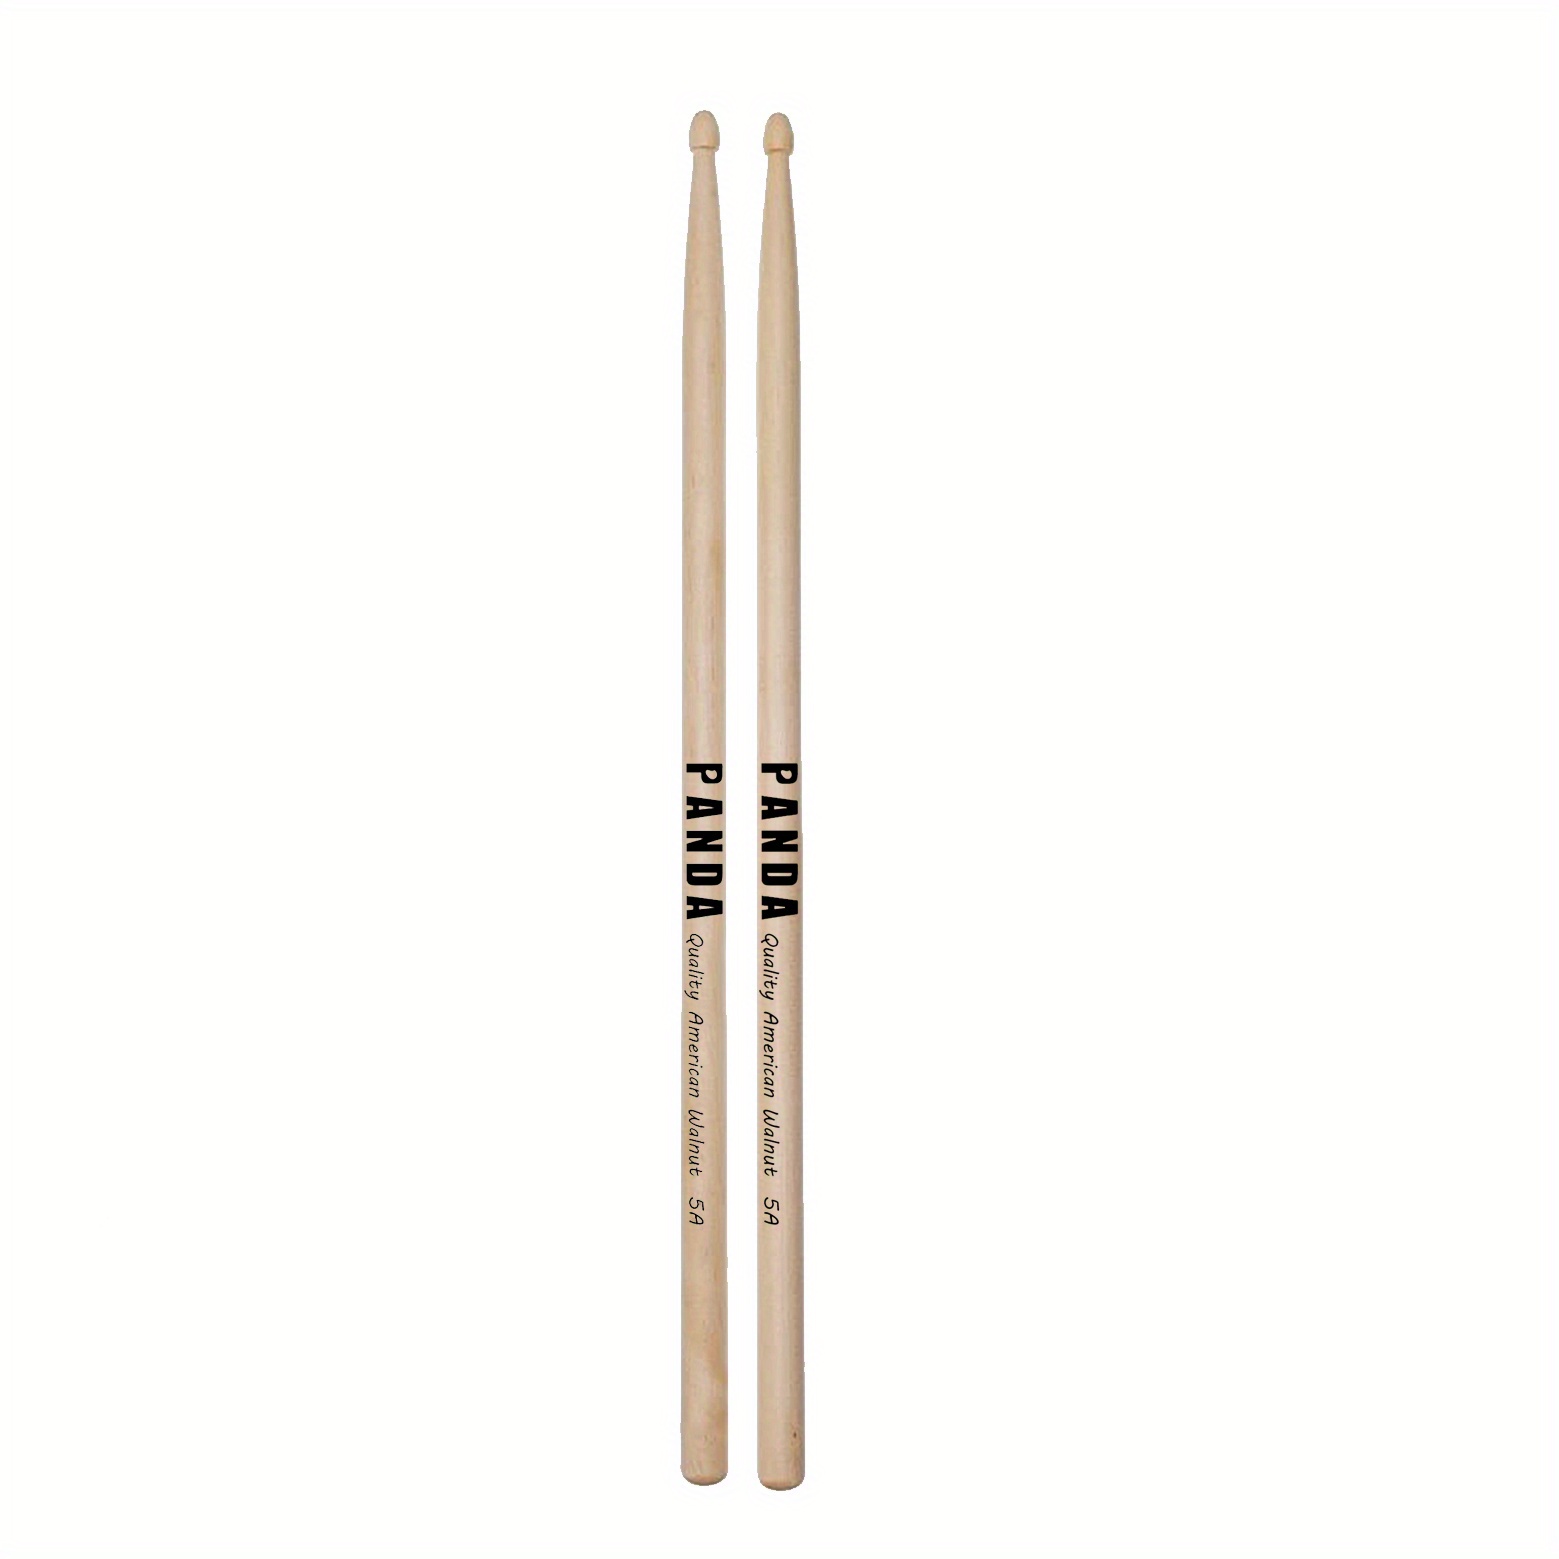 Panda 5a Drum Sticks Kids Beginners Walnut Wood Drumsticks - Temu